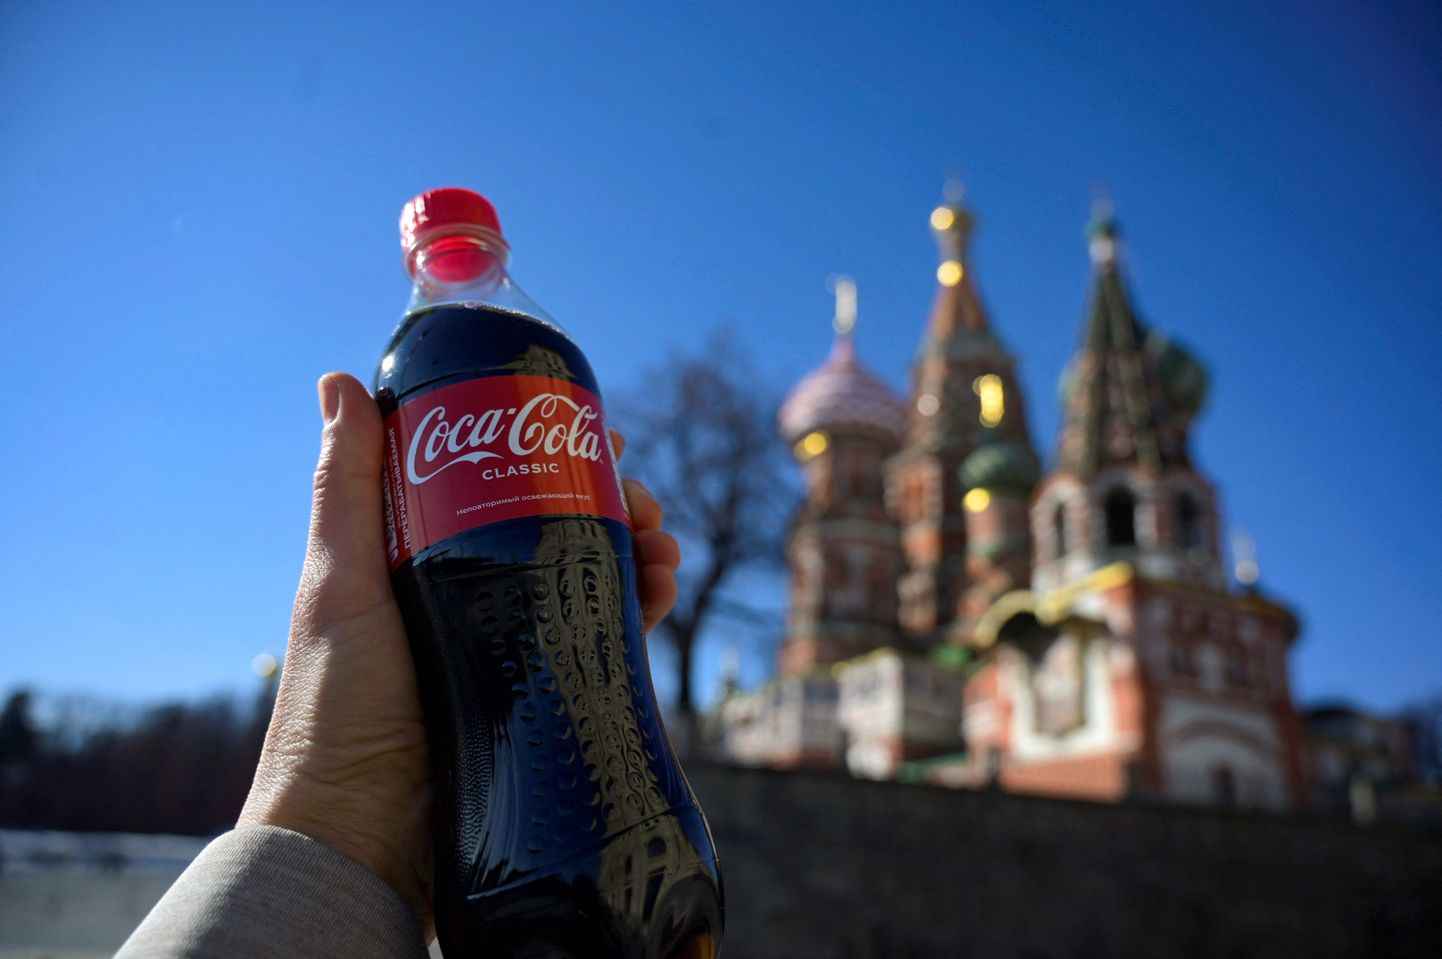 Inimene hoidmas Moksvas märtsis Coca-Cola pudelit. Coca-Cola kompanii lahkus Venemaalt ja venelased hakkasid tootma selle firma karastusjookidega sarnaseid karastusjooke